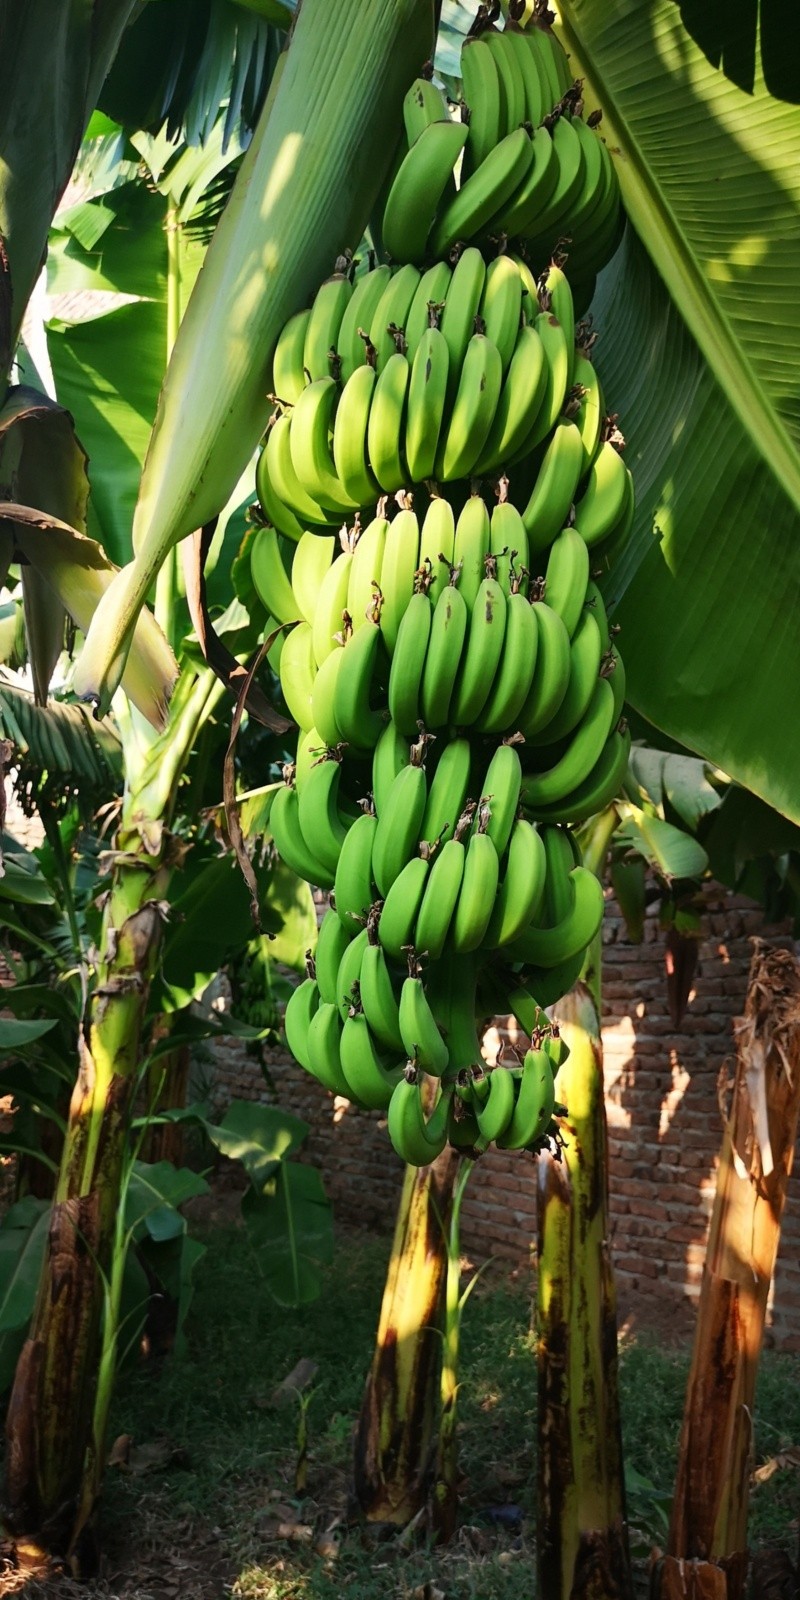 Los plátanos verdes, a pesar de no ser tan suaves y dulces, pueden tener beneficios para la salud. FOTO:Volodymyr Bihdash/PEXELS 